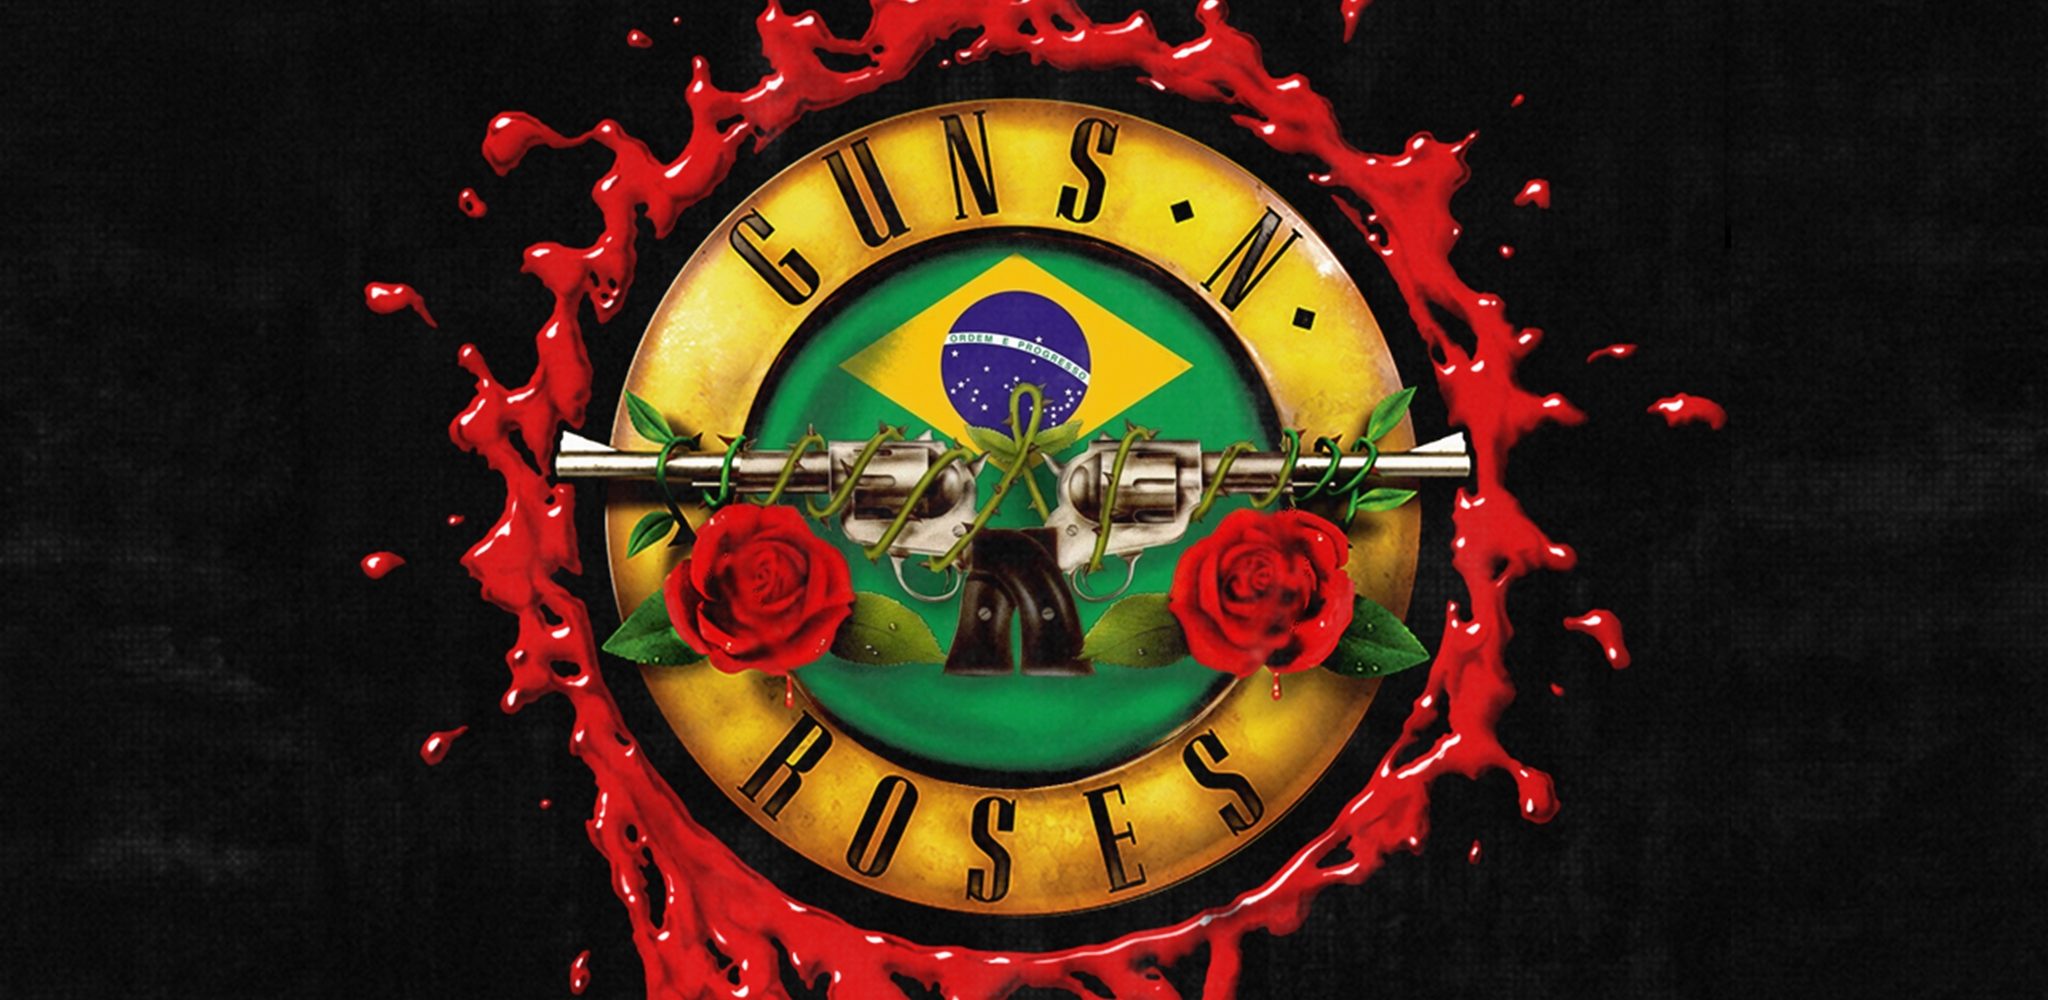 Guns N’ Roses tour 2017 no Brasil com Setlist comentado